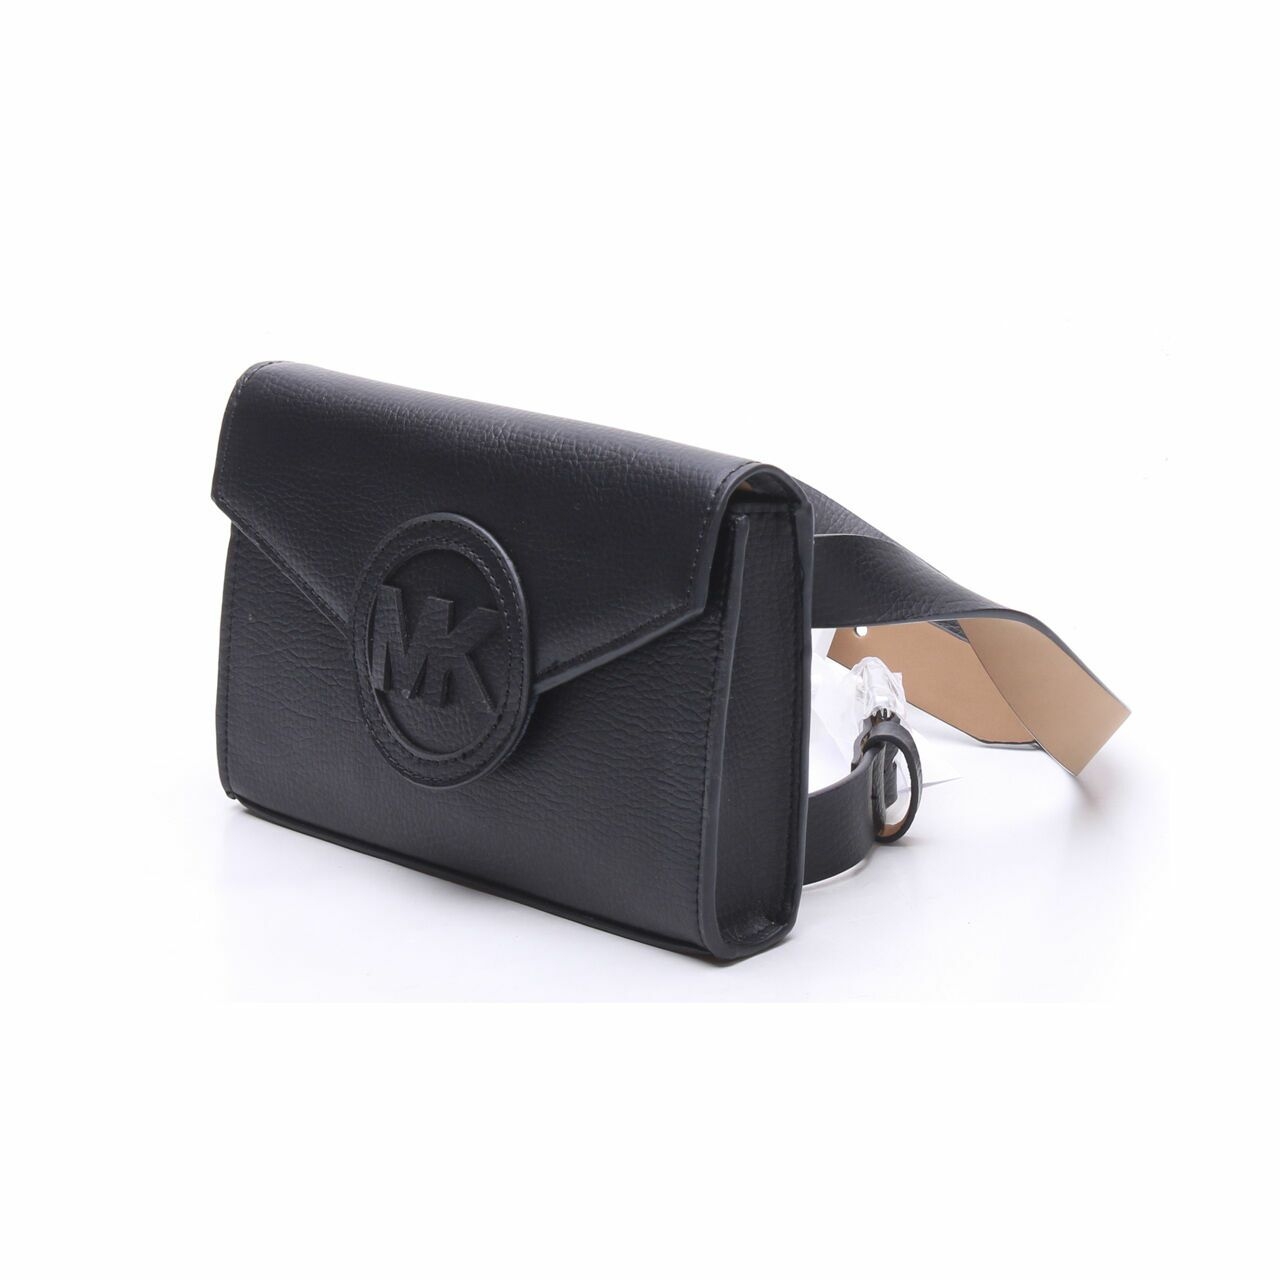 Michael Kors Black Leather Belt Bag